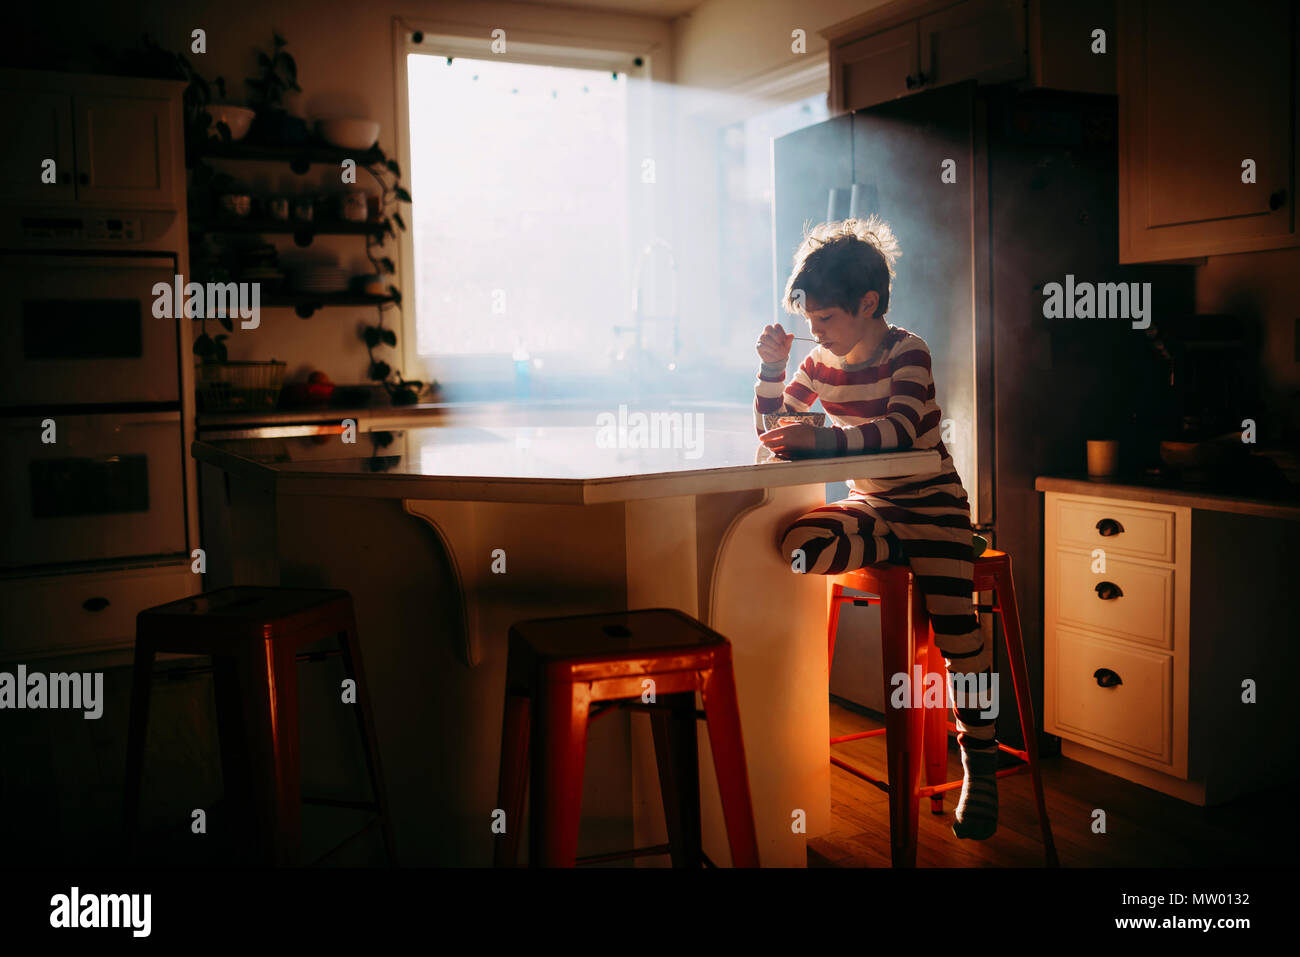 Ragazzo seduto in cucina a mangiare la sua colazione nella luce del mattino Foto Stock